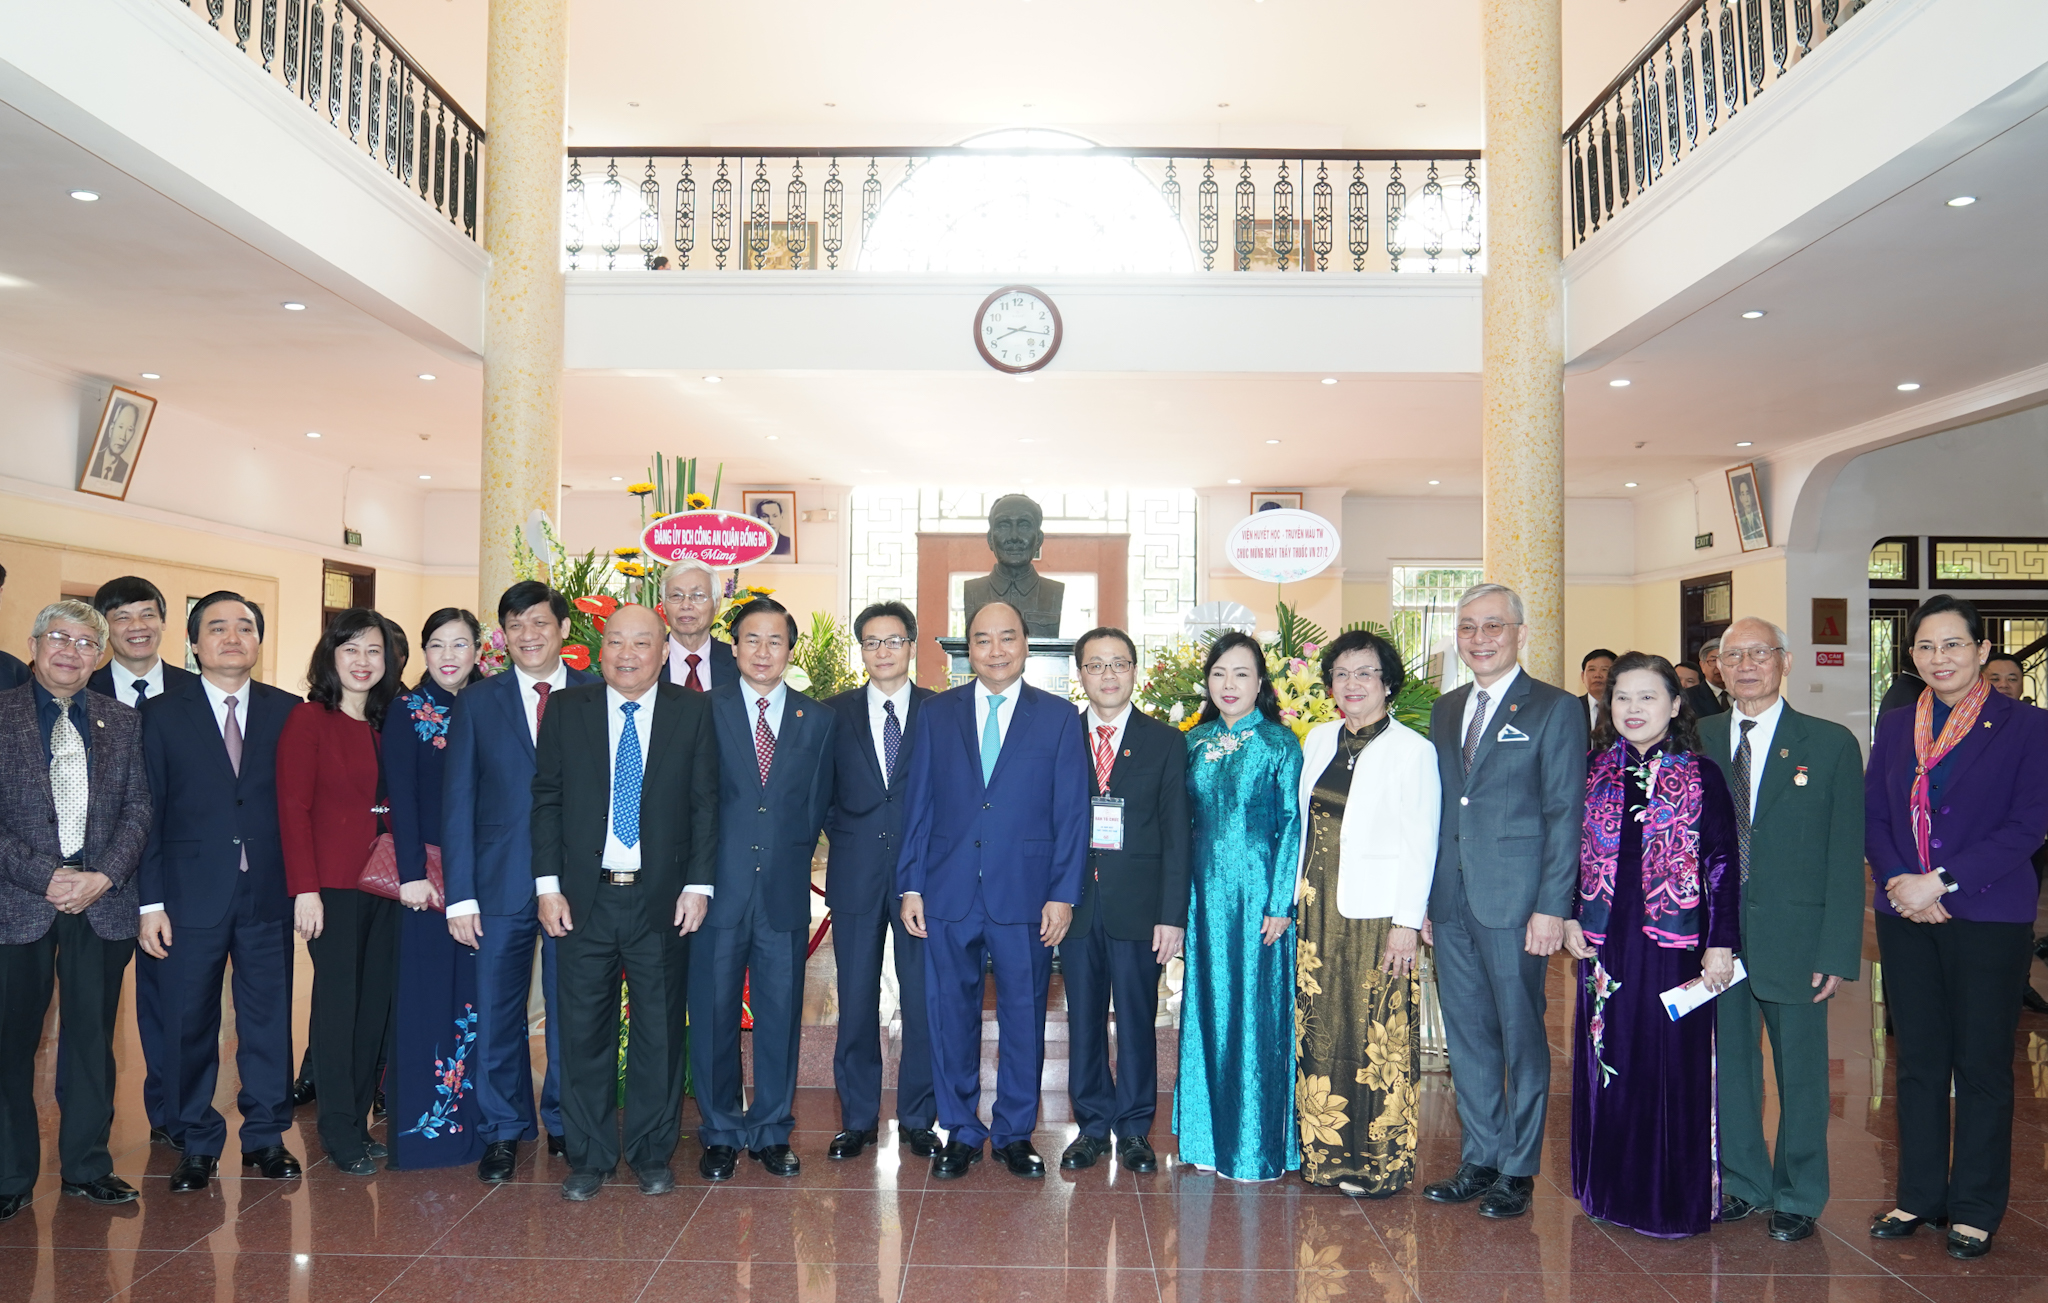 Thủ tướng Nguyễn Xuân Phúc, Phó Thủ tướng Vũ Đức Đam cùng các đại biểu dự buổi lễ. Ảnh: VGP/Quang Hiếu